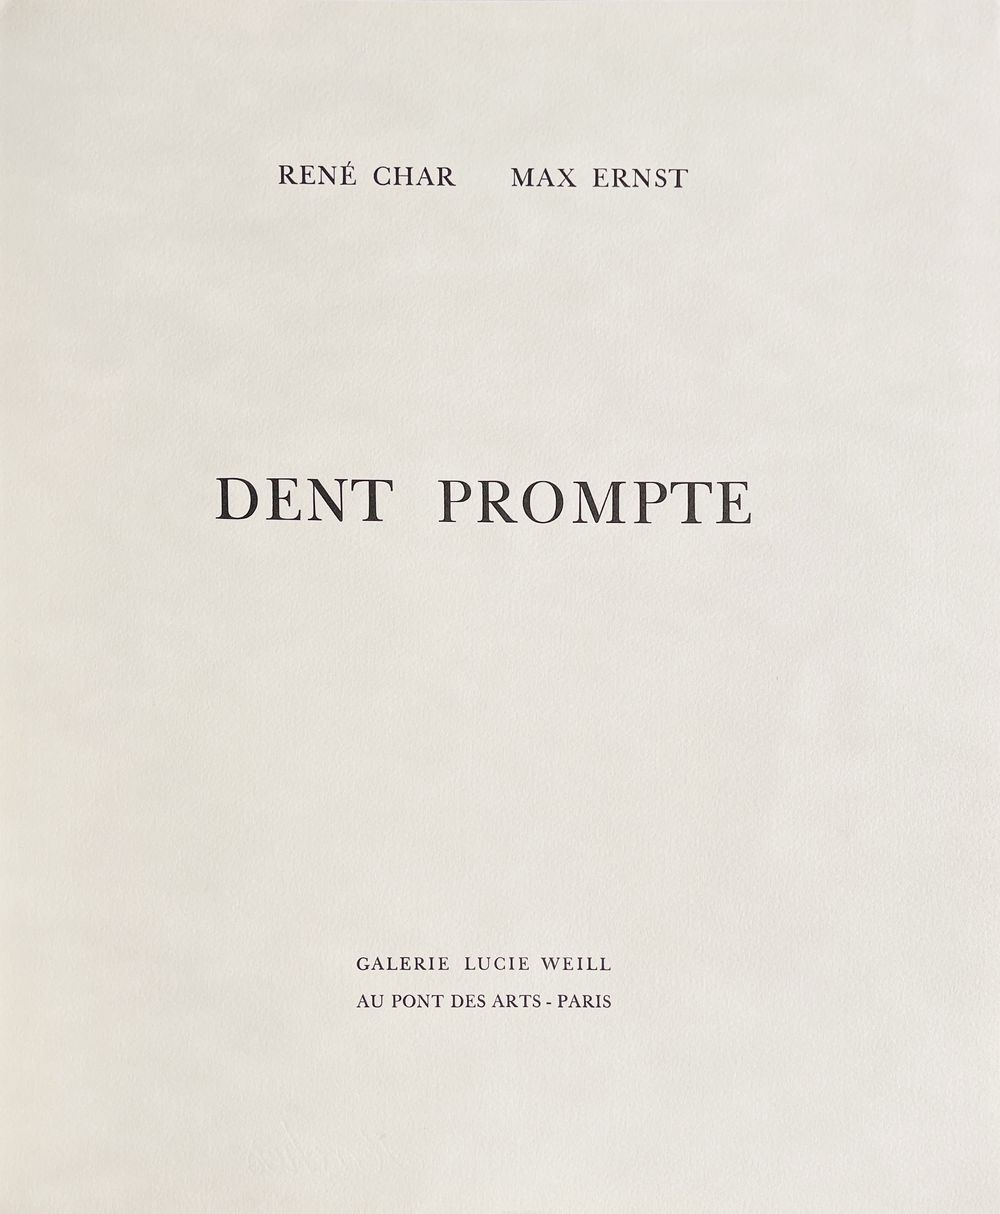 Dent prompte - René Char (complete portfolio)